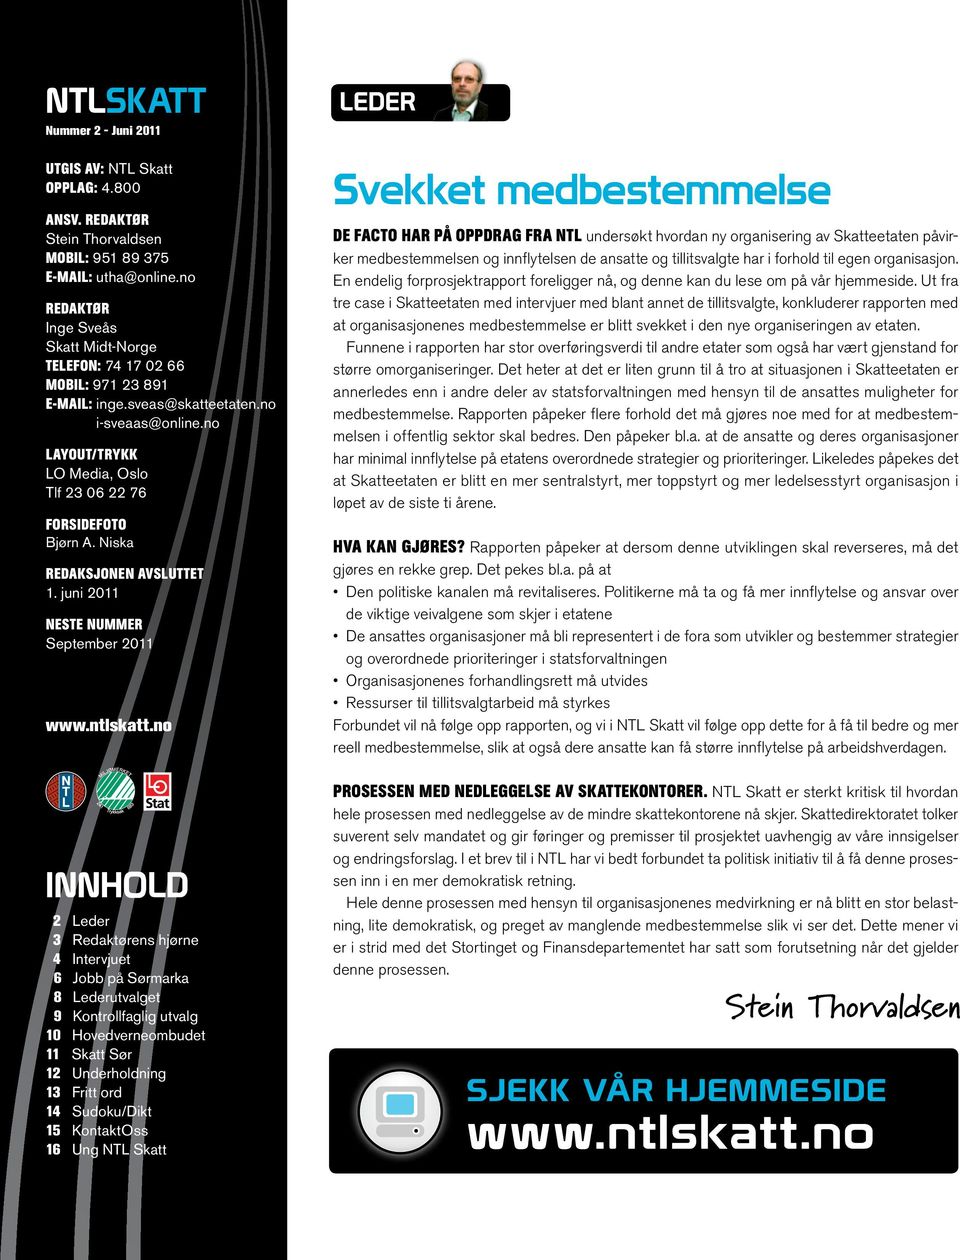 Niska Redaksjonen avsluttet 1. juni 2011 Neste nummer September 2011 www.ntlskatt.